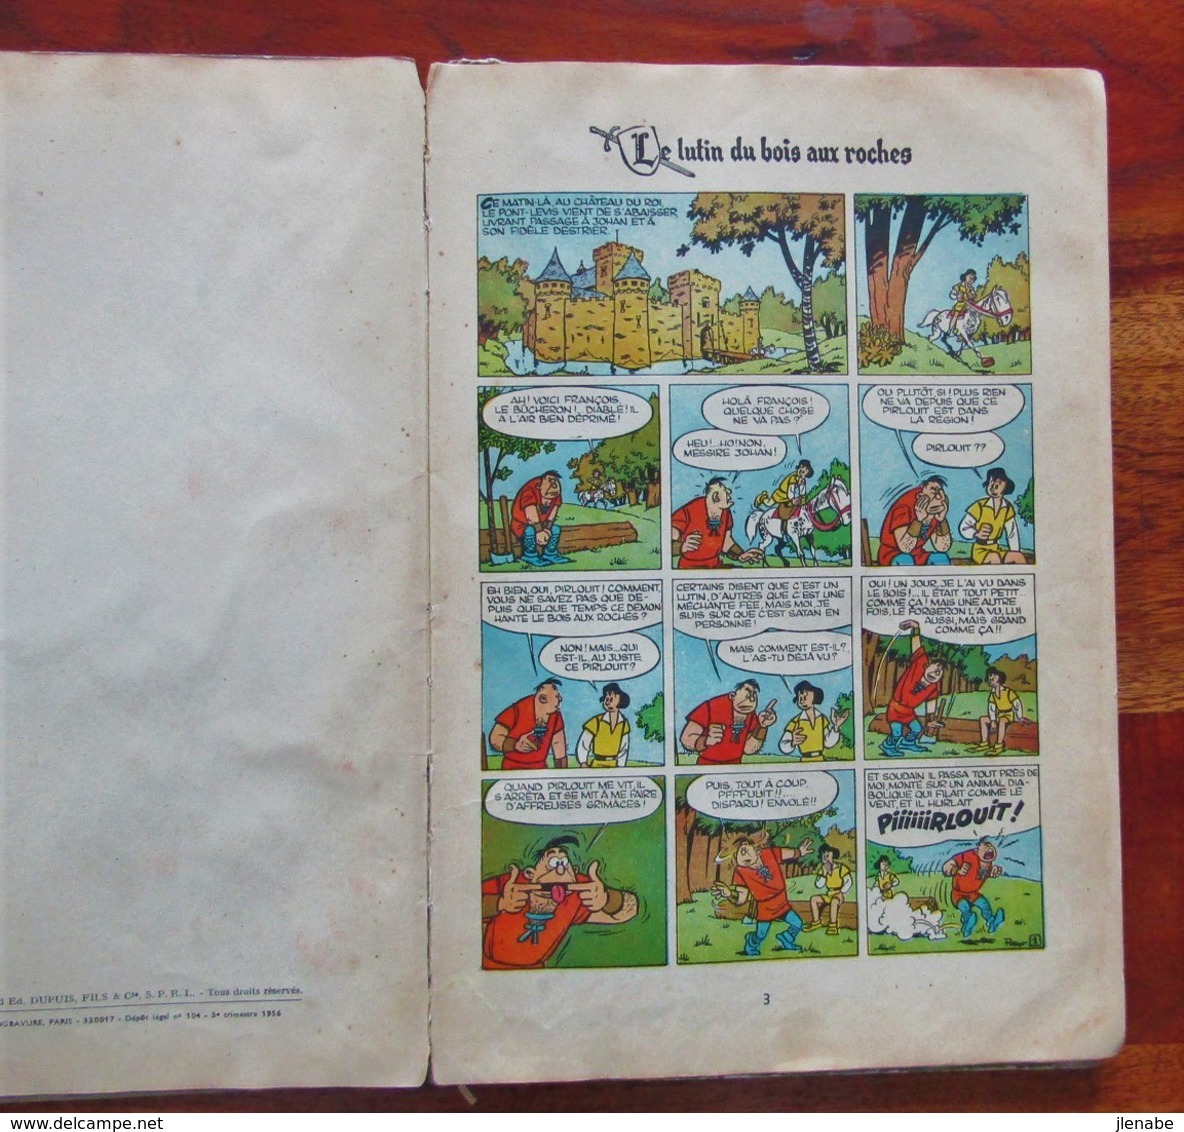 Rare Edition Originale française de 1956 du " Johan et Pirlouit n°3 Le lutin du bois des roches " par PEYO